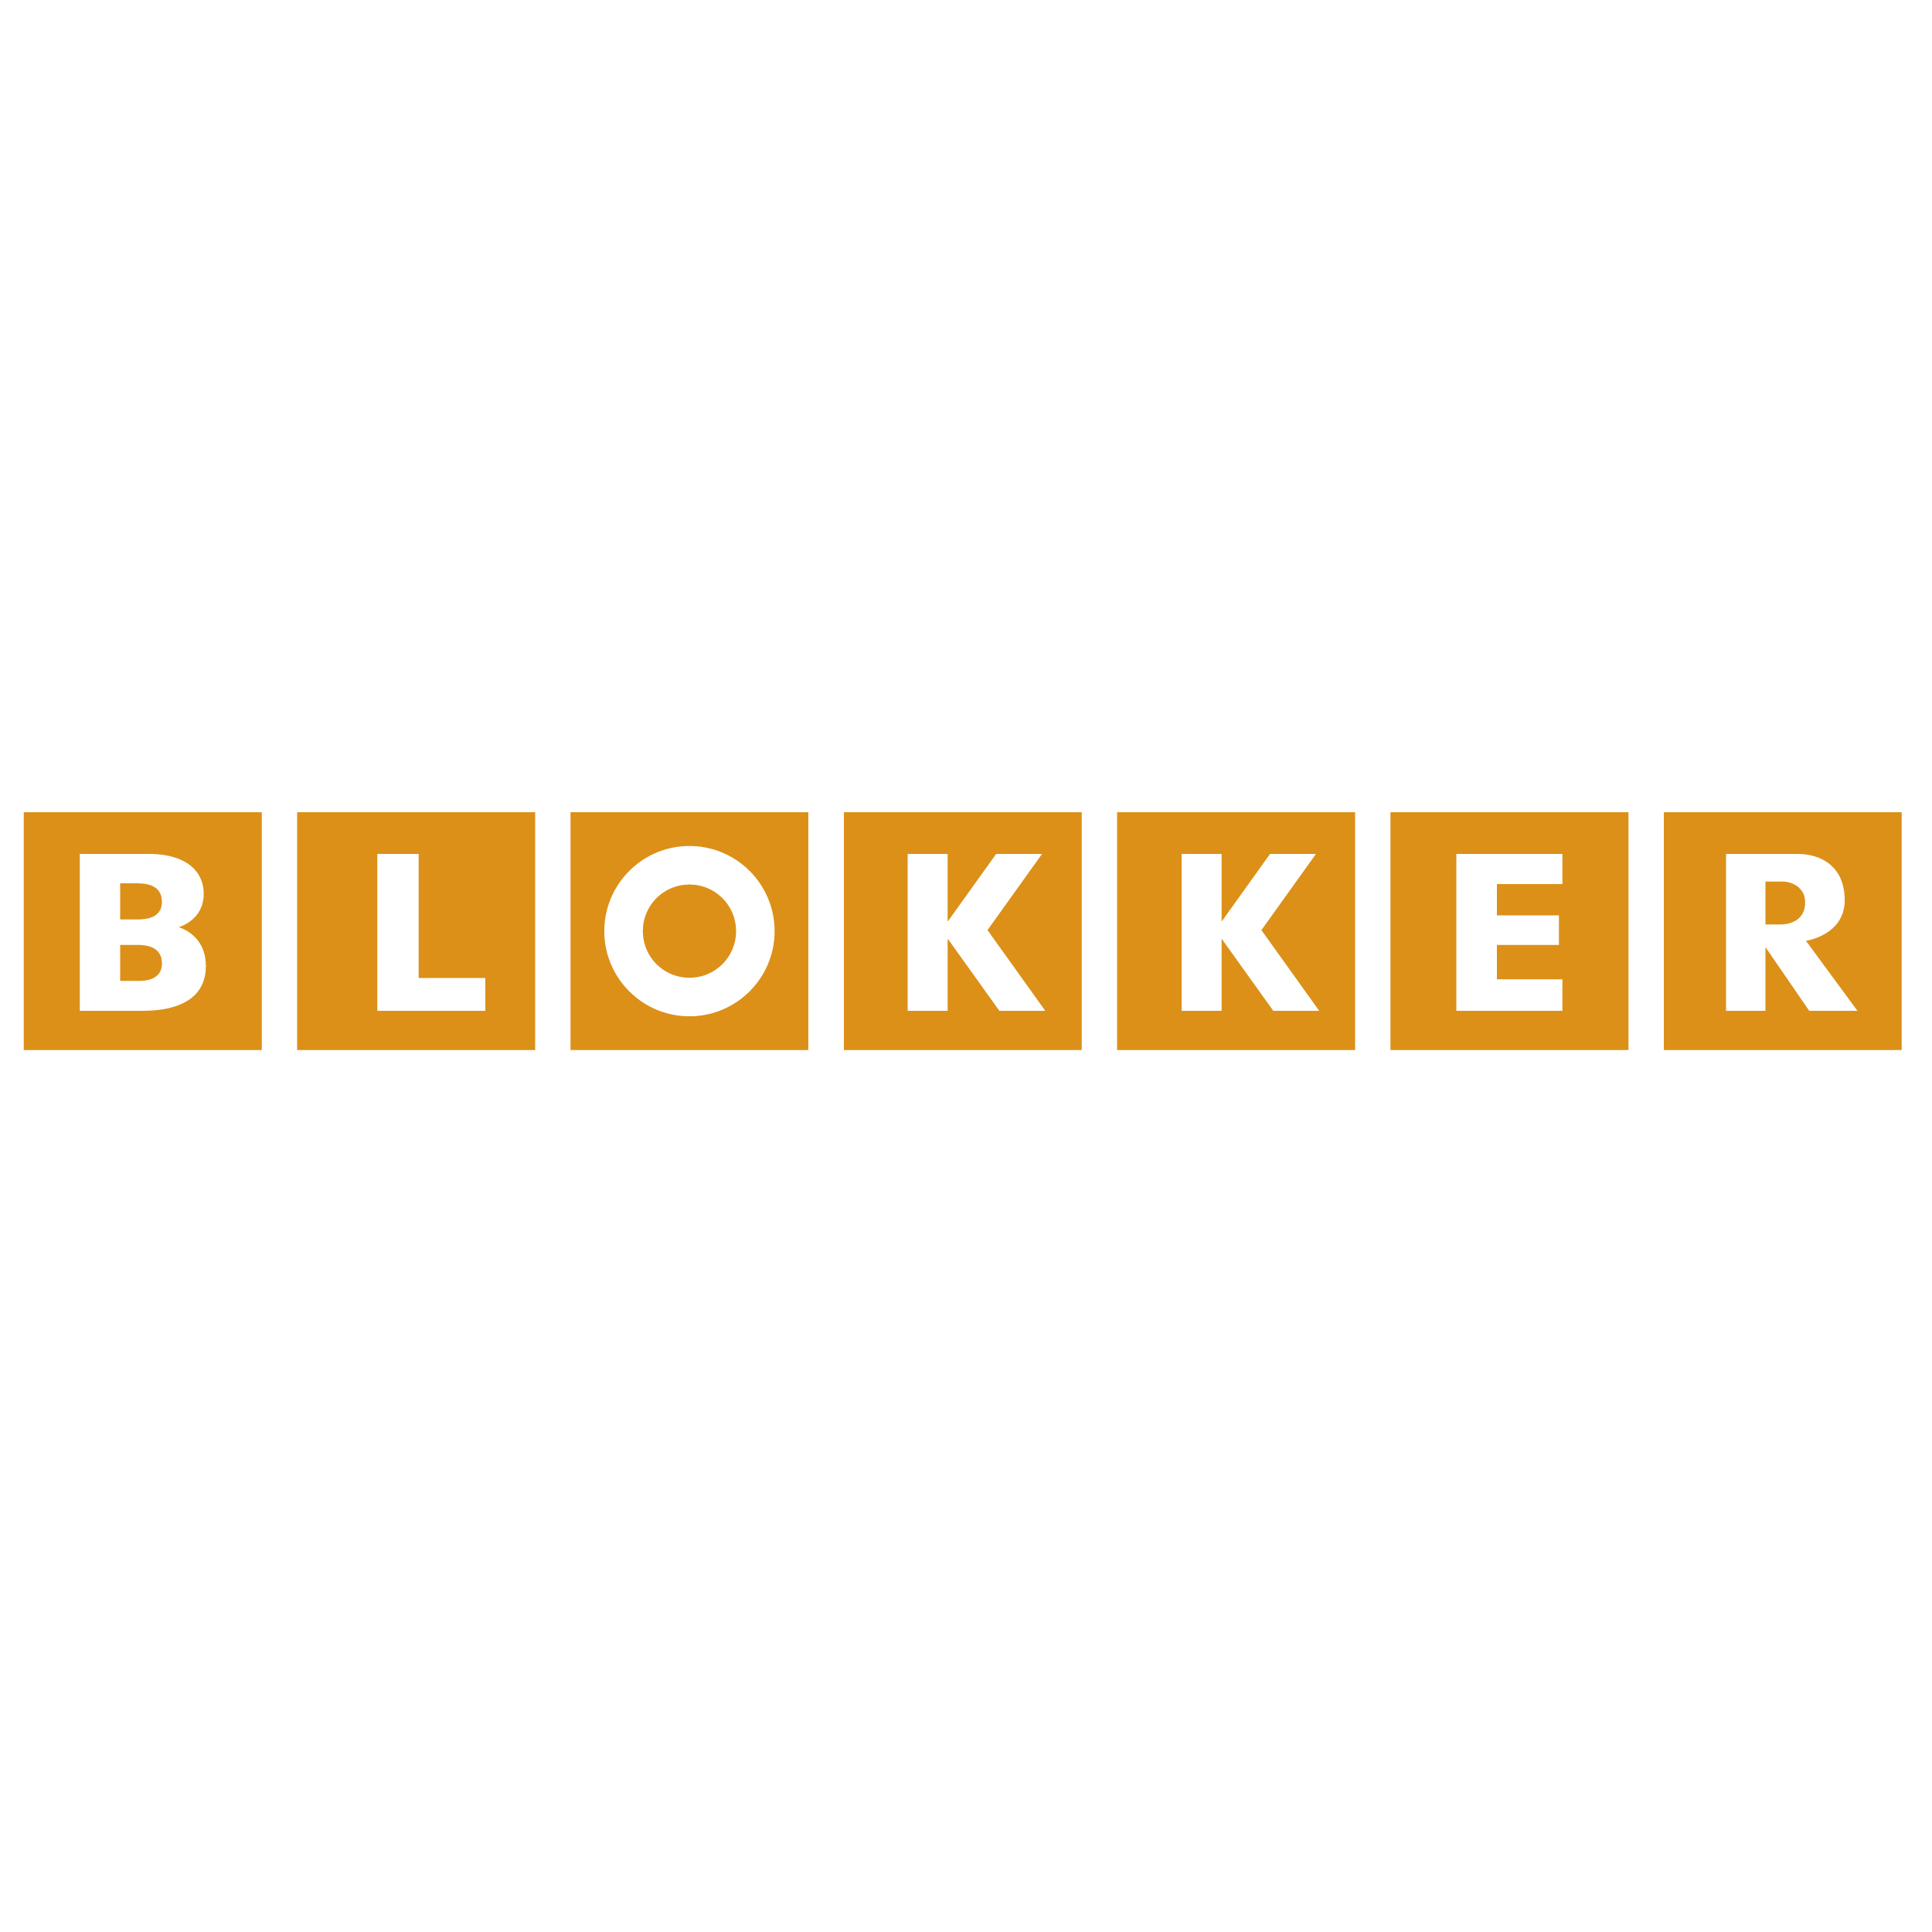 Blokker klantenservice